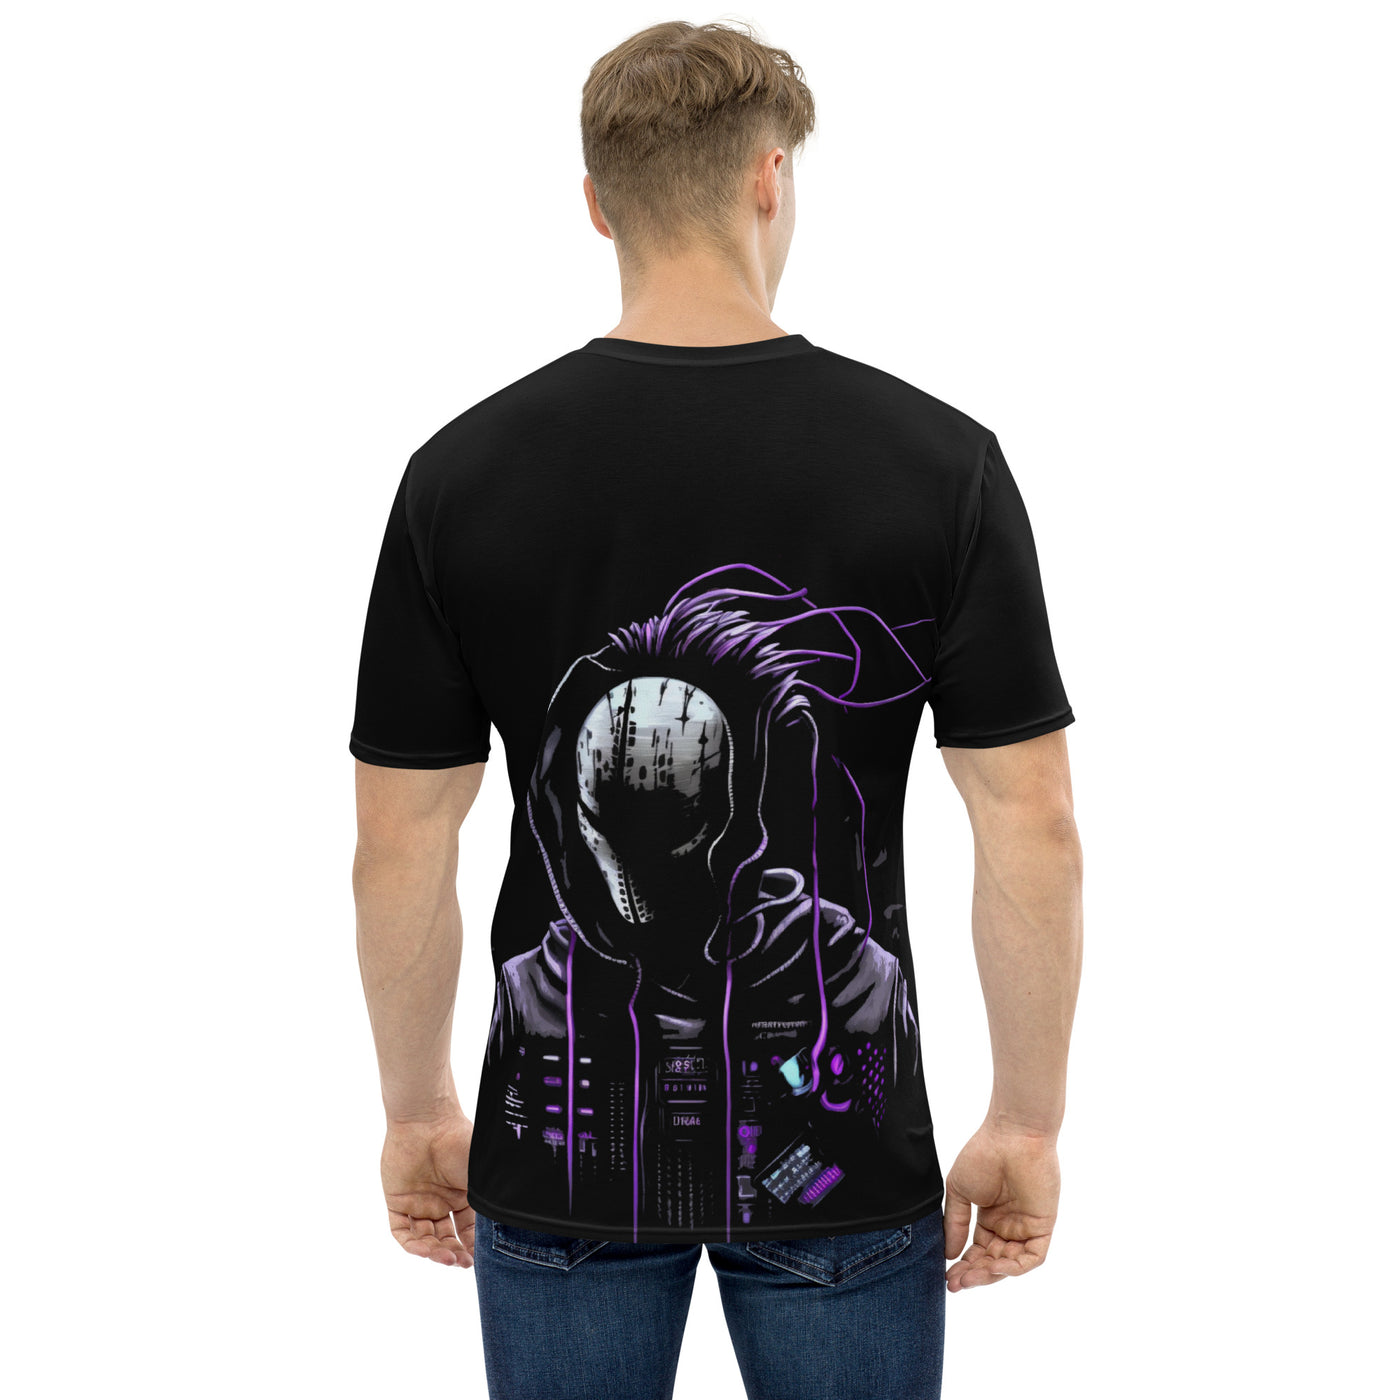 Cyberware assassin v45 - Men's t-shirt (back print)